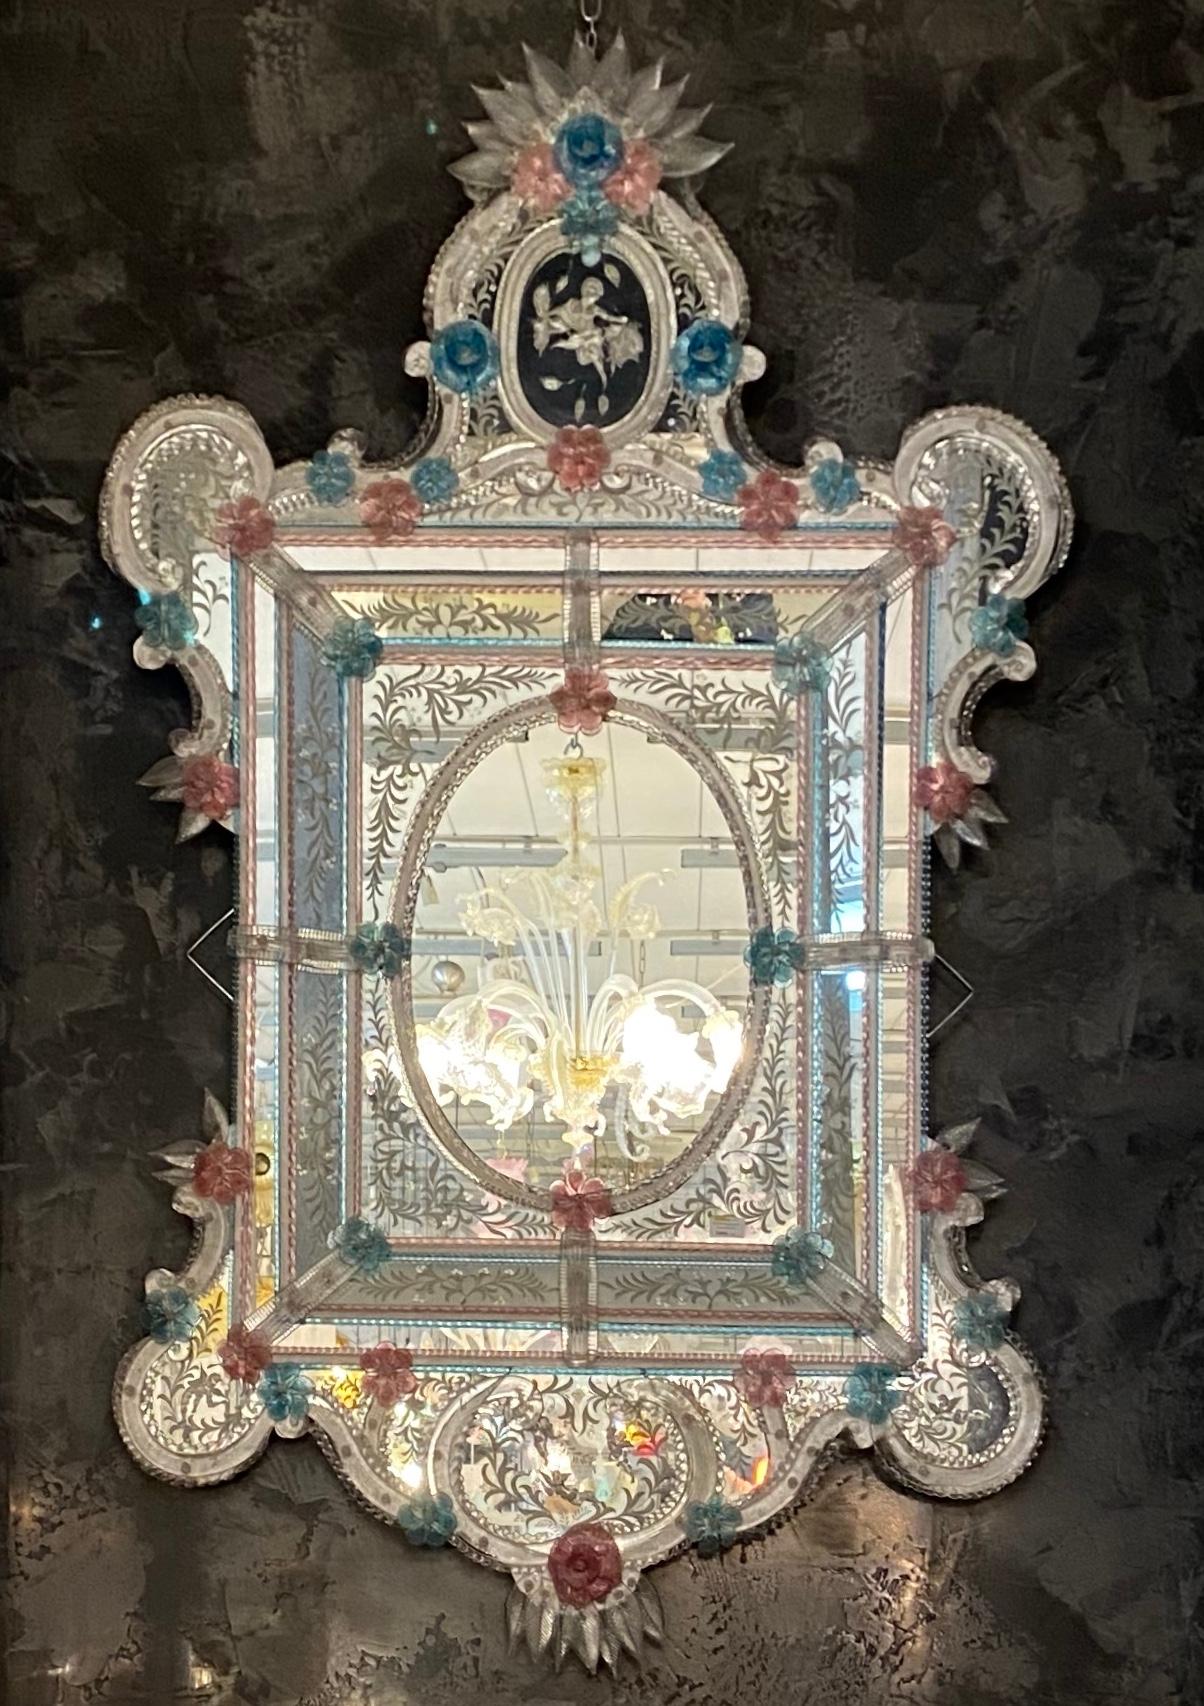 Dieser schöne venezianische Spiegel ist mit geätzten Blumenmotiven versehen, die den Spiegelrahmen zieren. Entlang der Ränder des Rahmens befinden sich gläserne Seilakzente und zahlreiche rosa und blaue Glasblumen.
Ausgeführt von einem großen